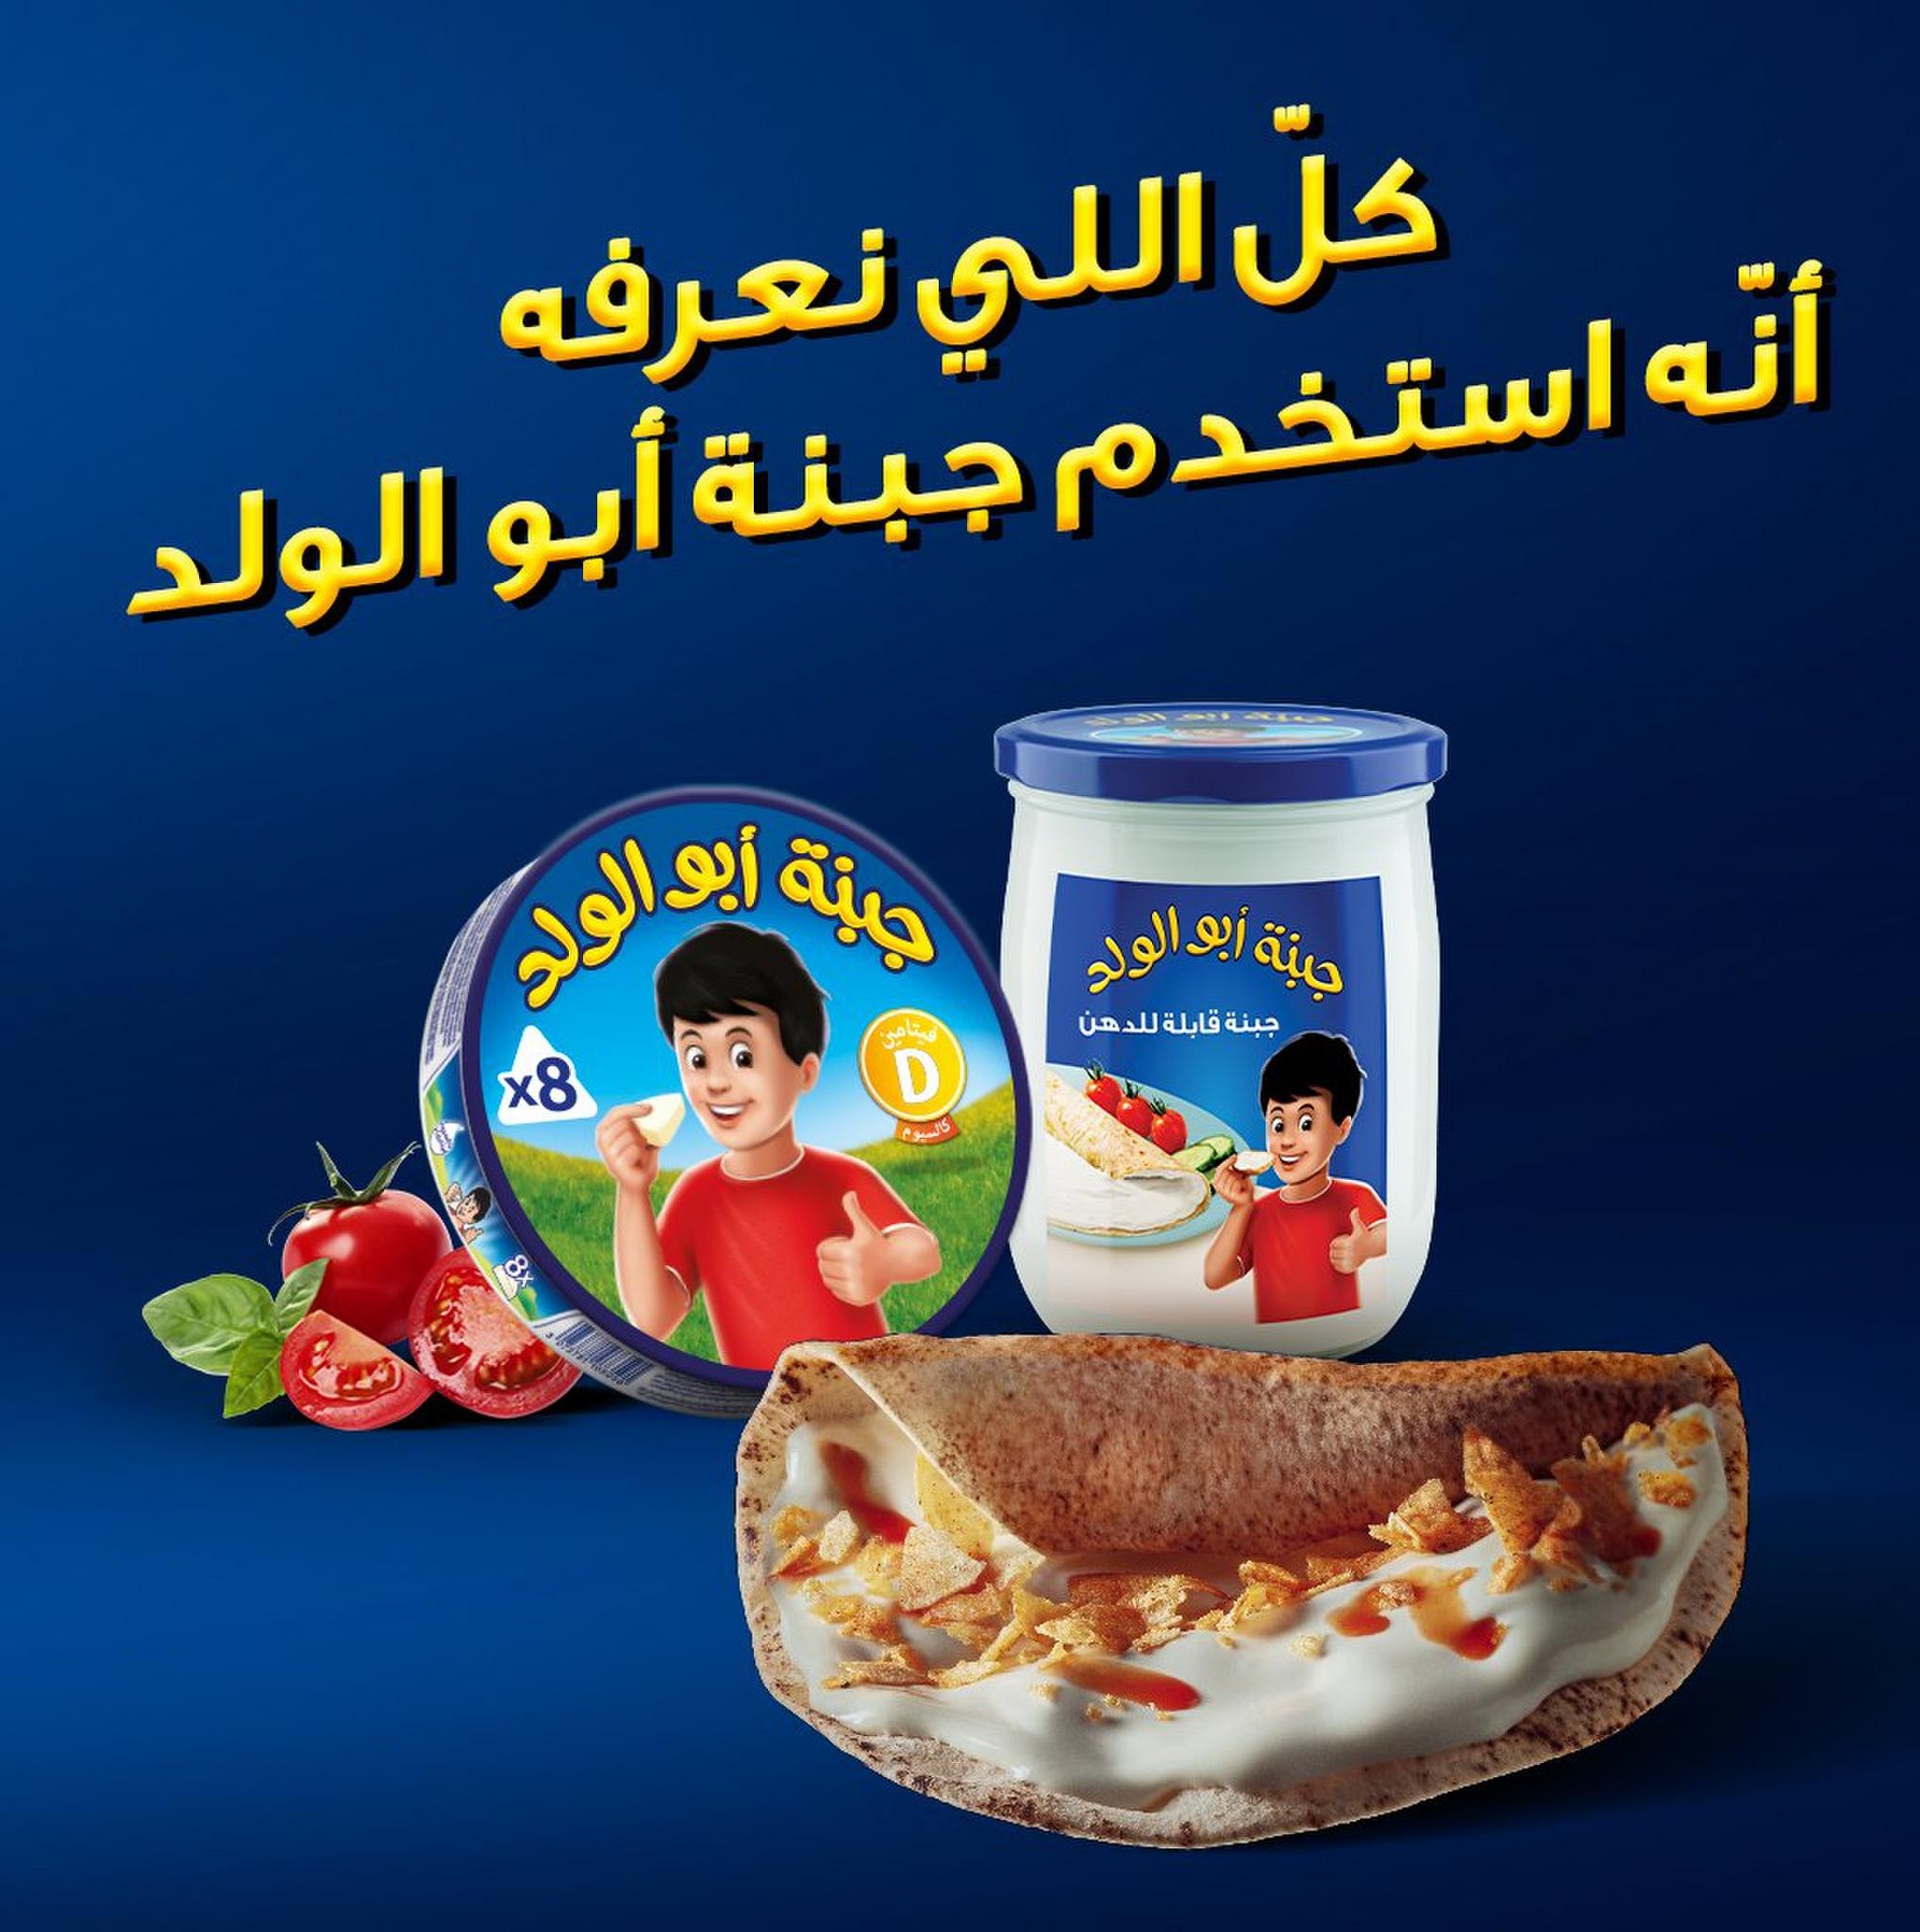 The Omani Sandwich